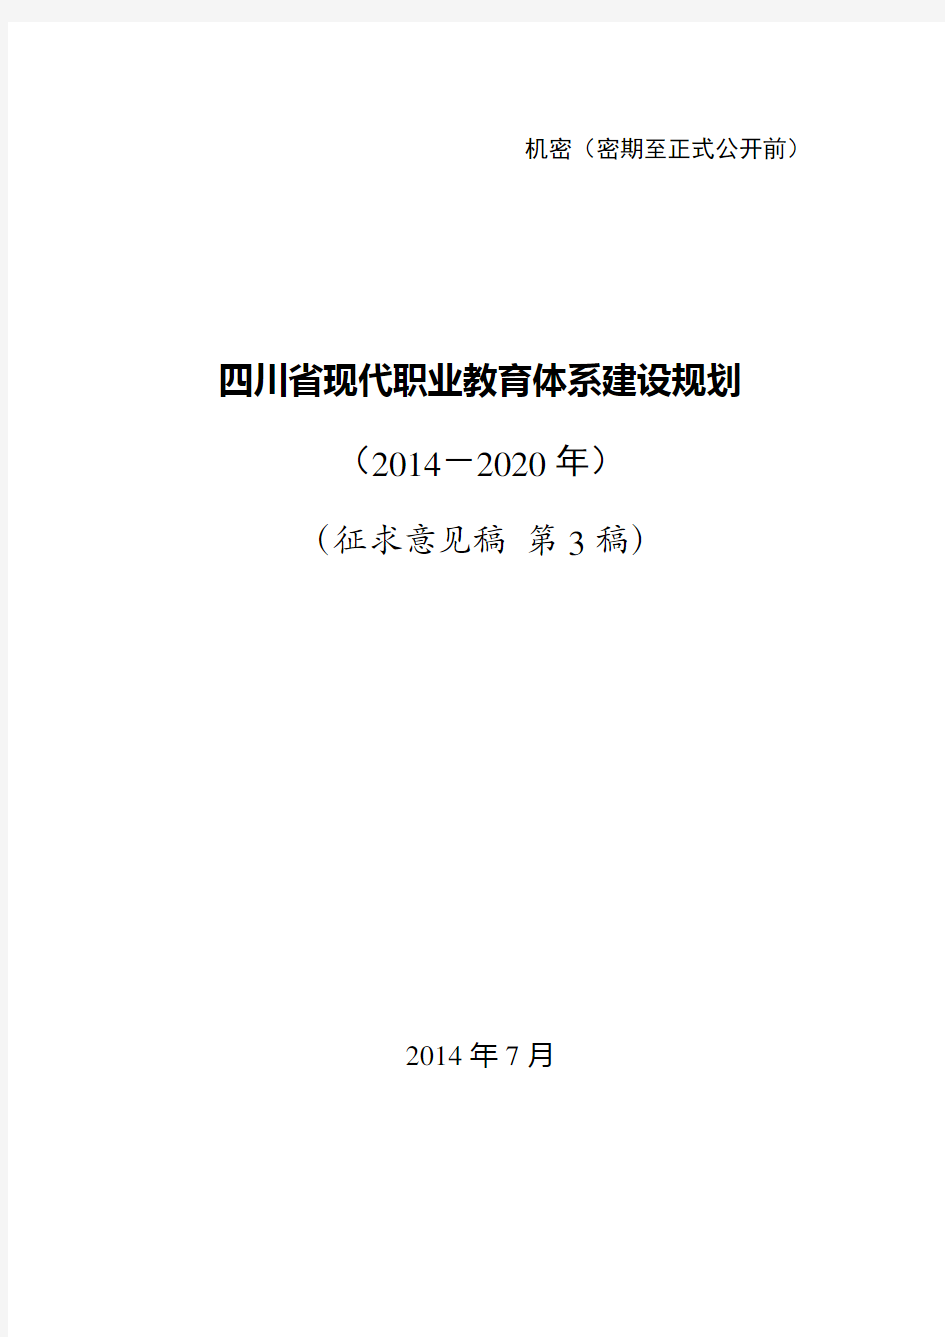 2014.07.16《四川省现代职业教育体系建设规划(2014-2020年)》(初稿3)(印)